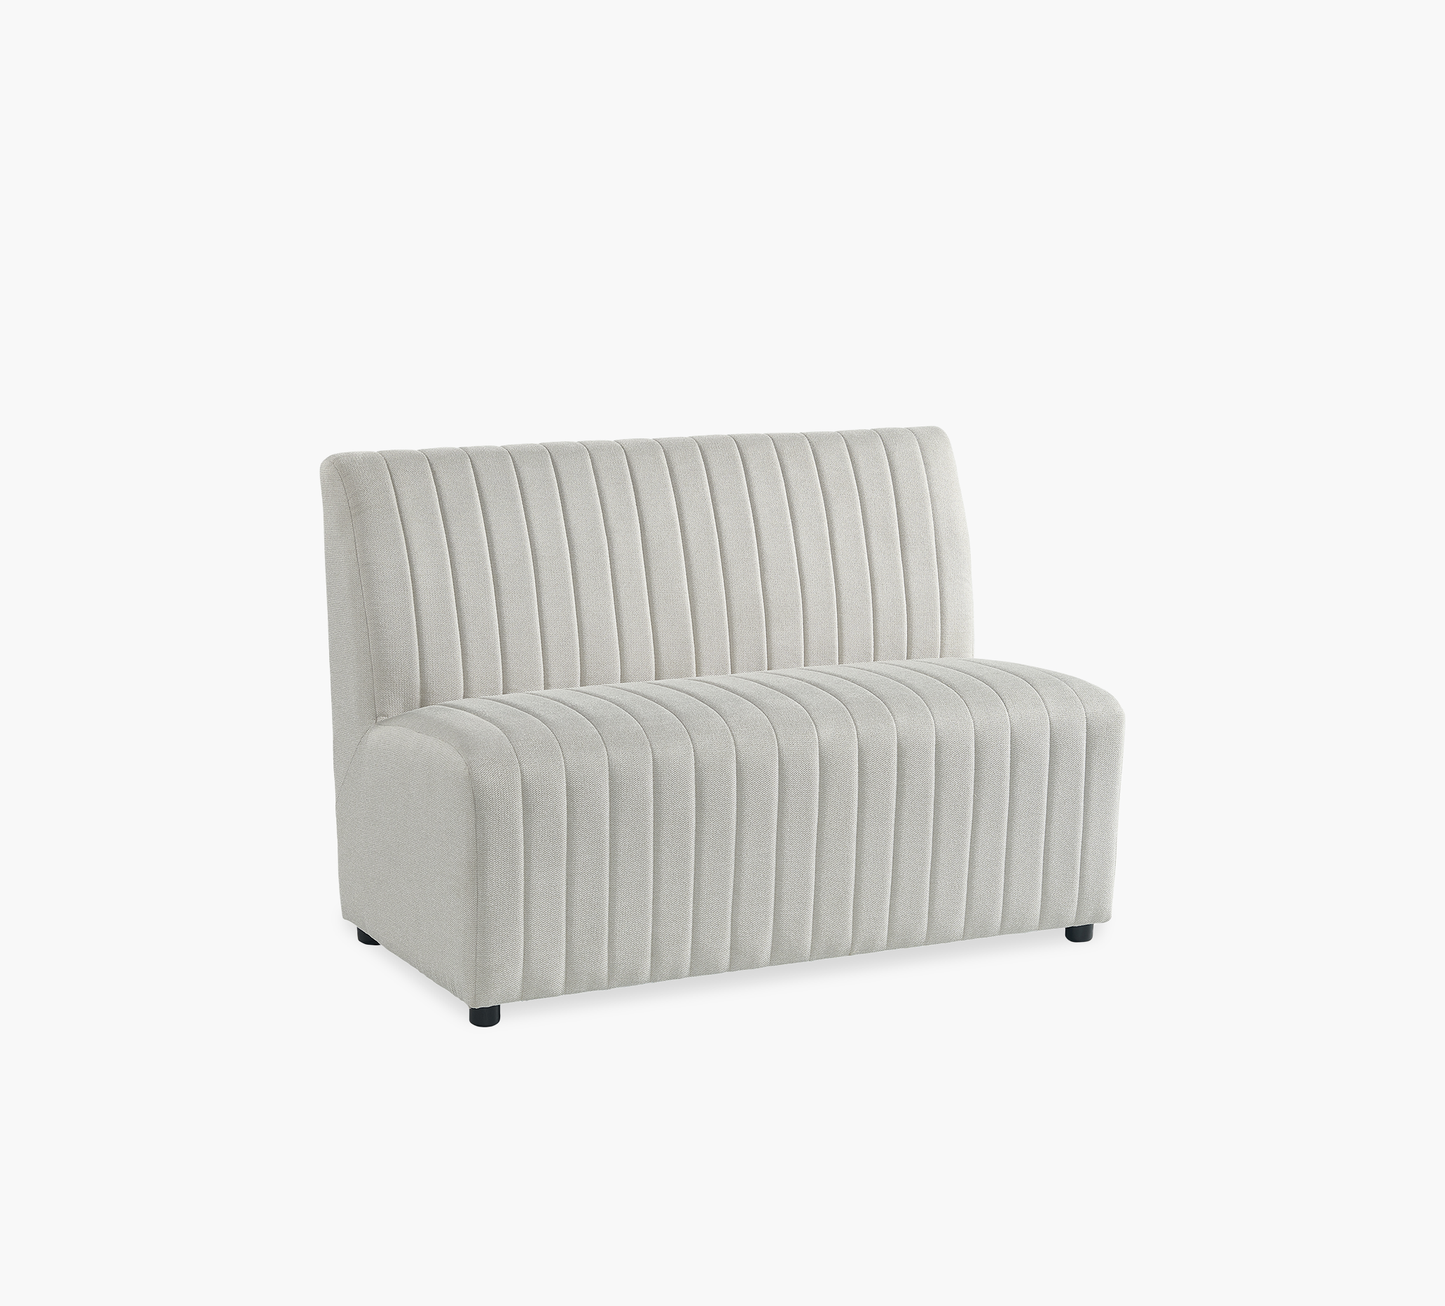 Jemma Long Bench Upholstered